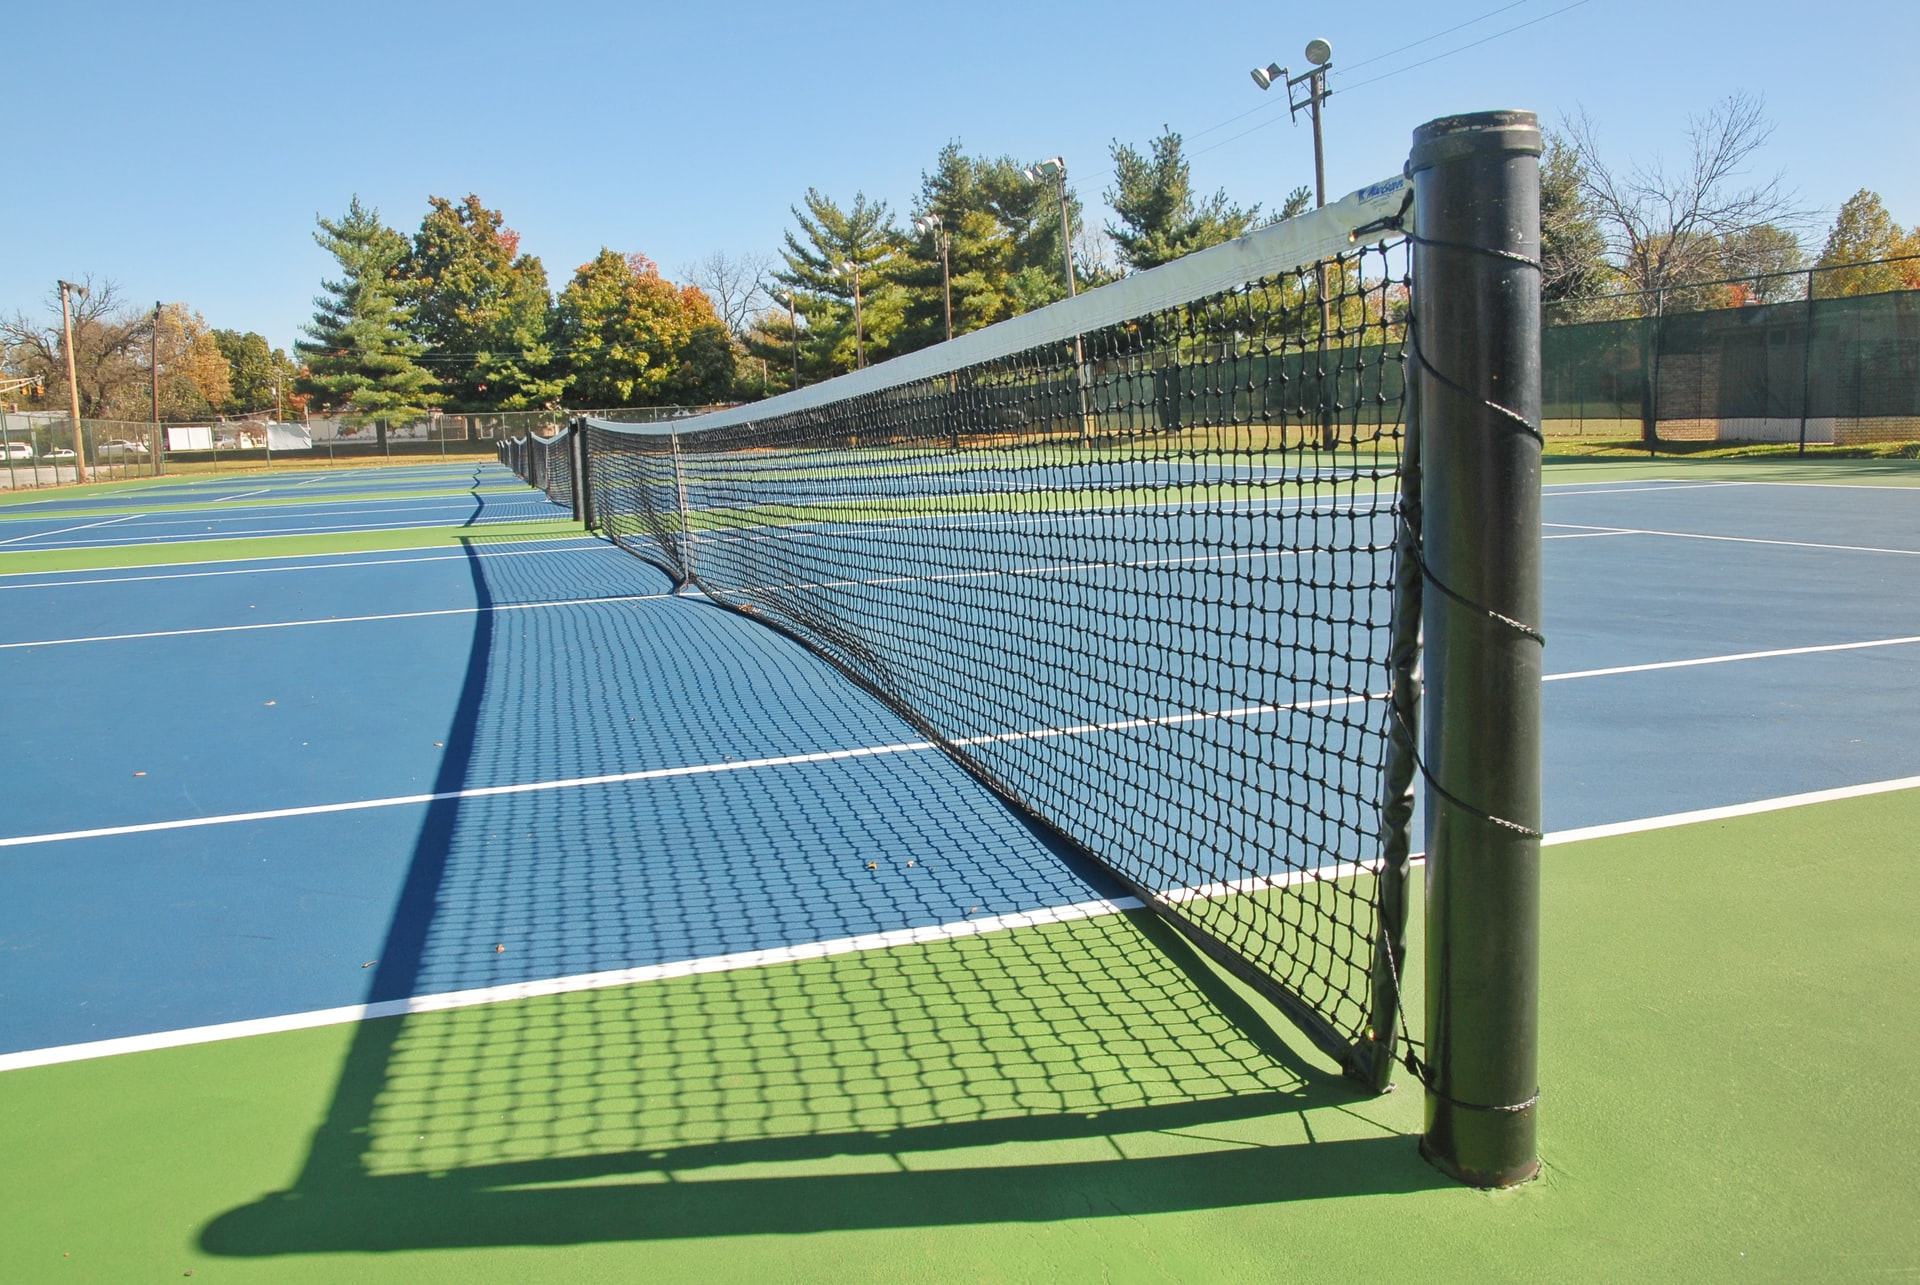 Visit Tennis Center for Pickleball Sessions